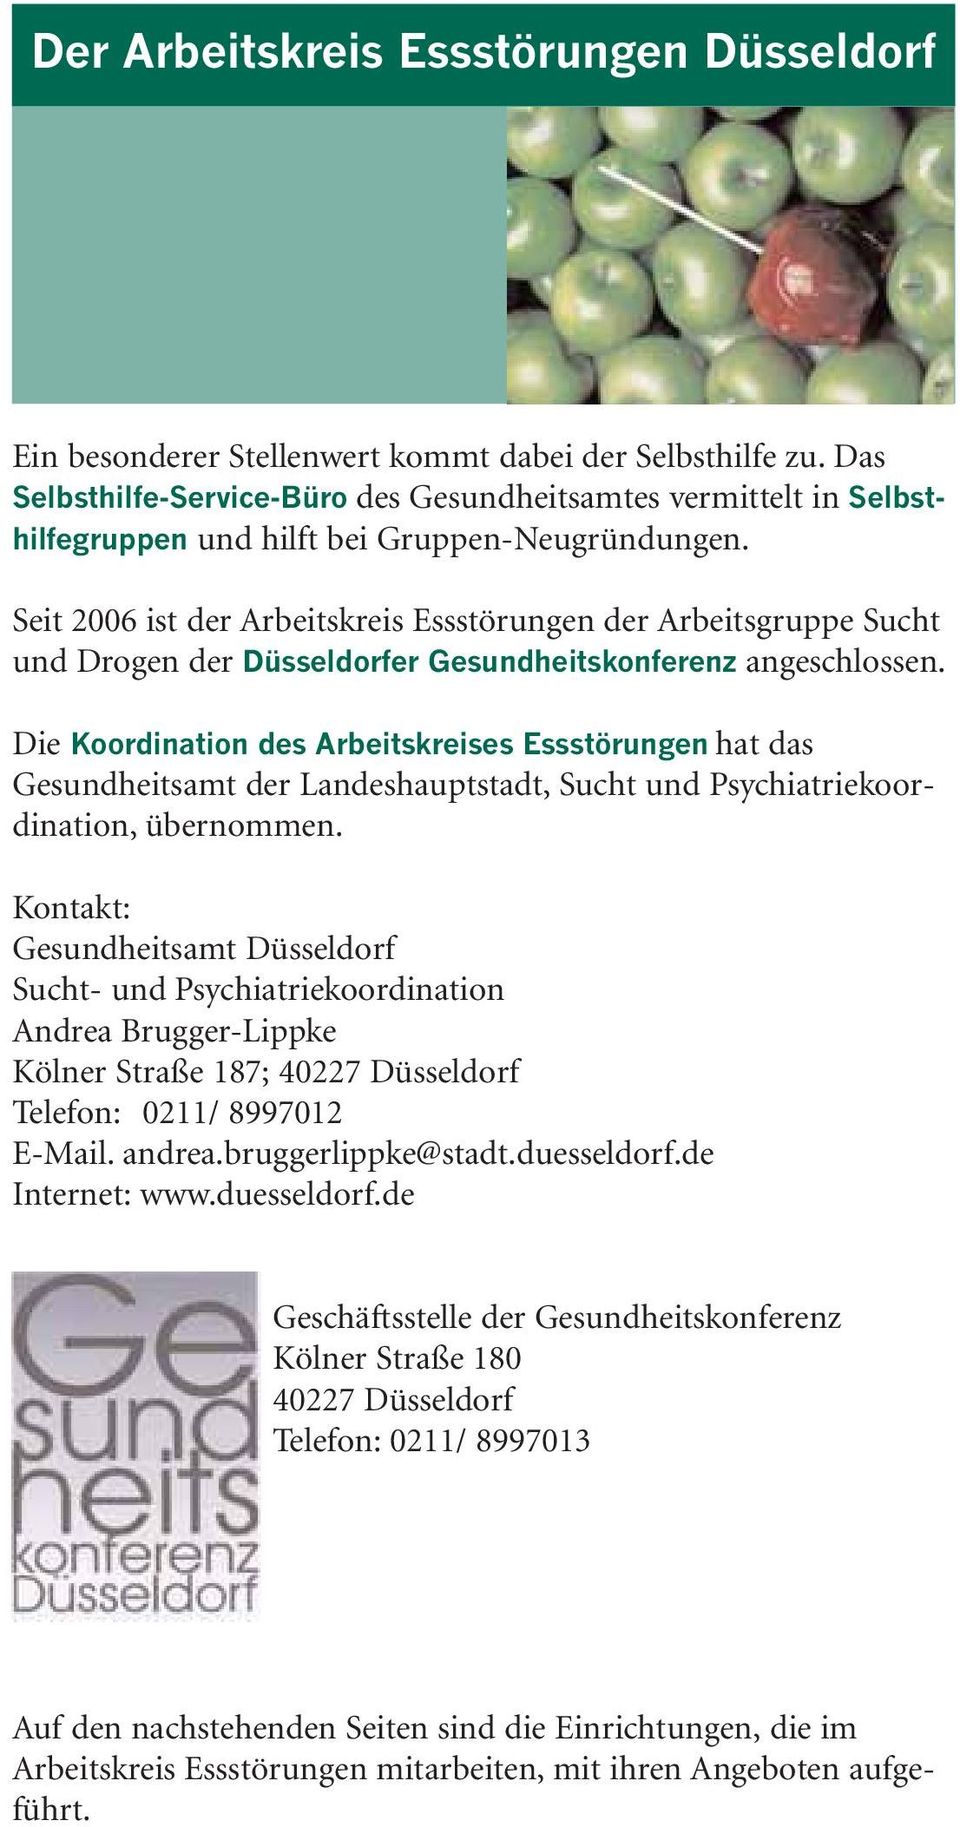 Seit 2006 ist der Arbeitskreis Essstörungen der Arbeitsgruppe Sucht und Drogen der Düsseldorfer Gesundheitskonferenz angeschlossen.